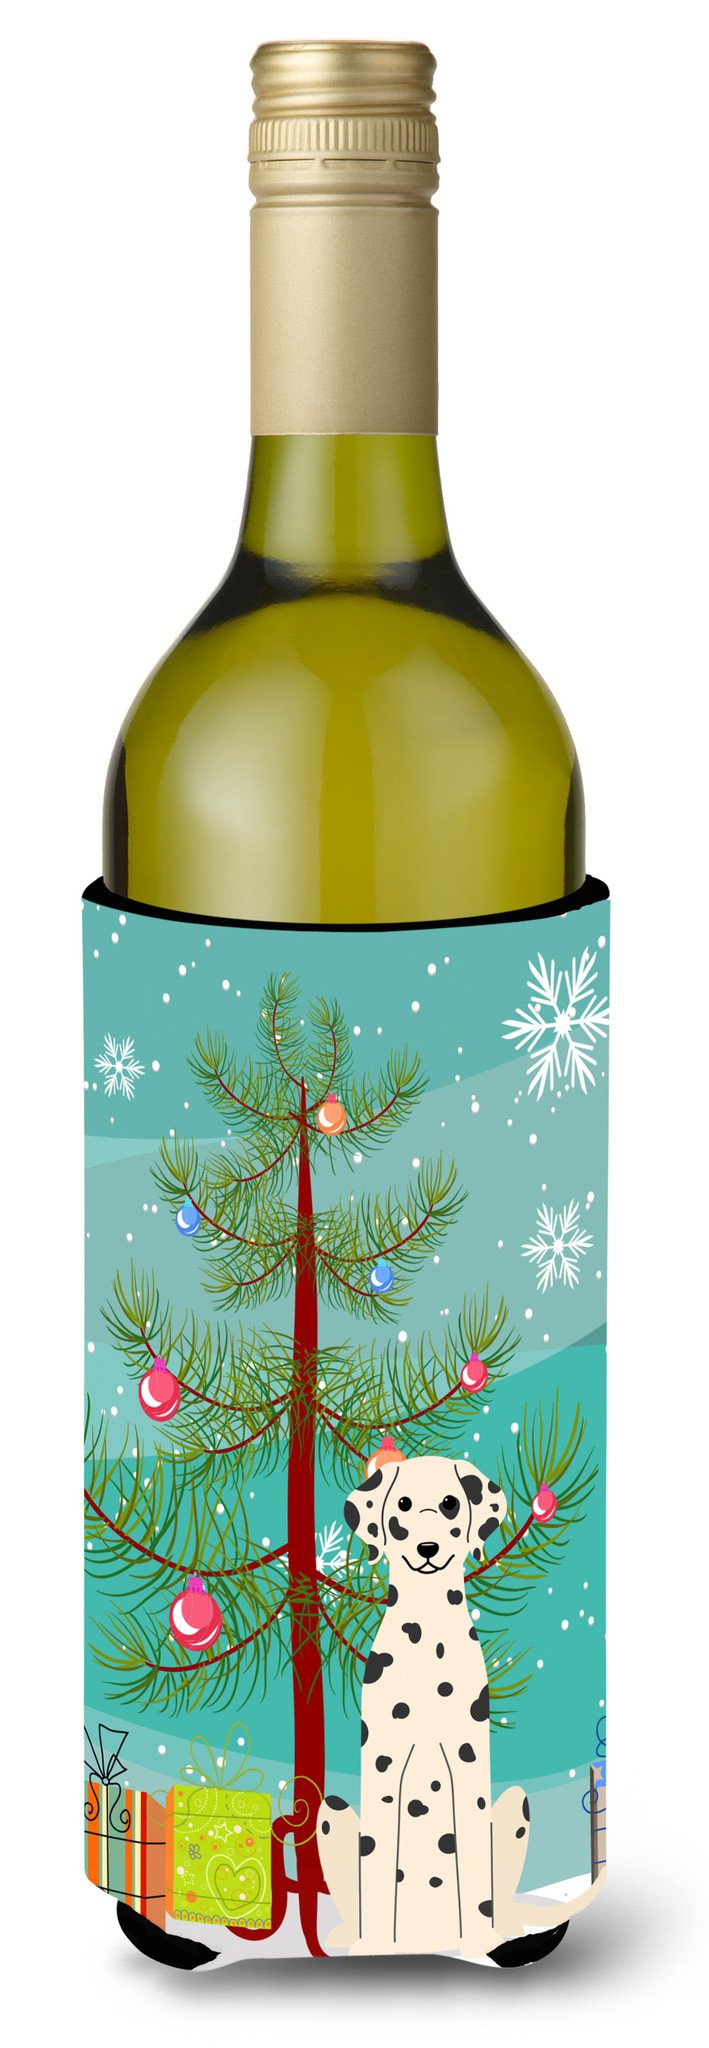 Merry Christmas Tree Dalmatian Wine Bottle Beverge Insulator Hugger BB4222LITERK by Caroline's Treasures